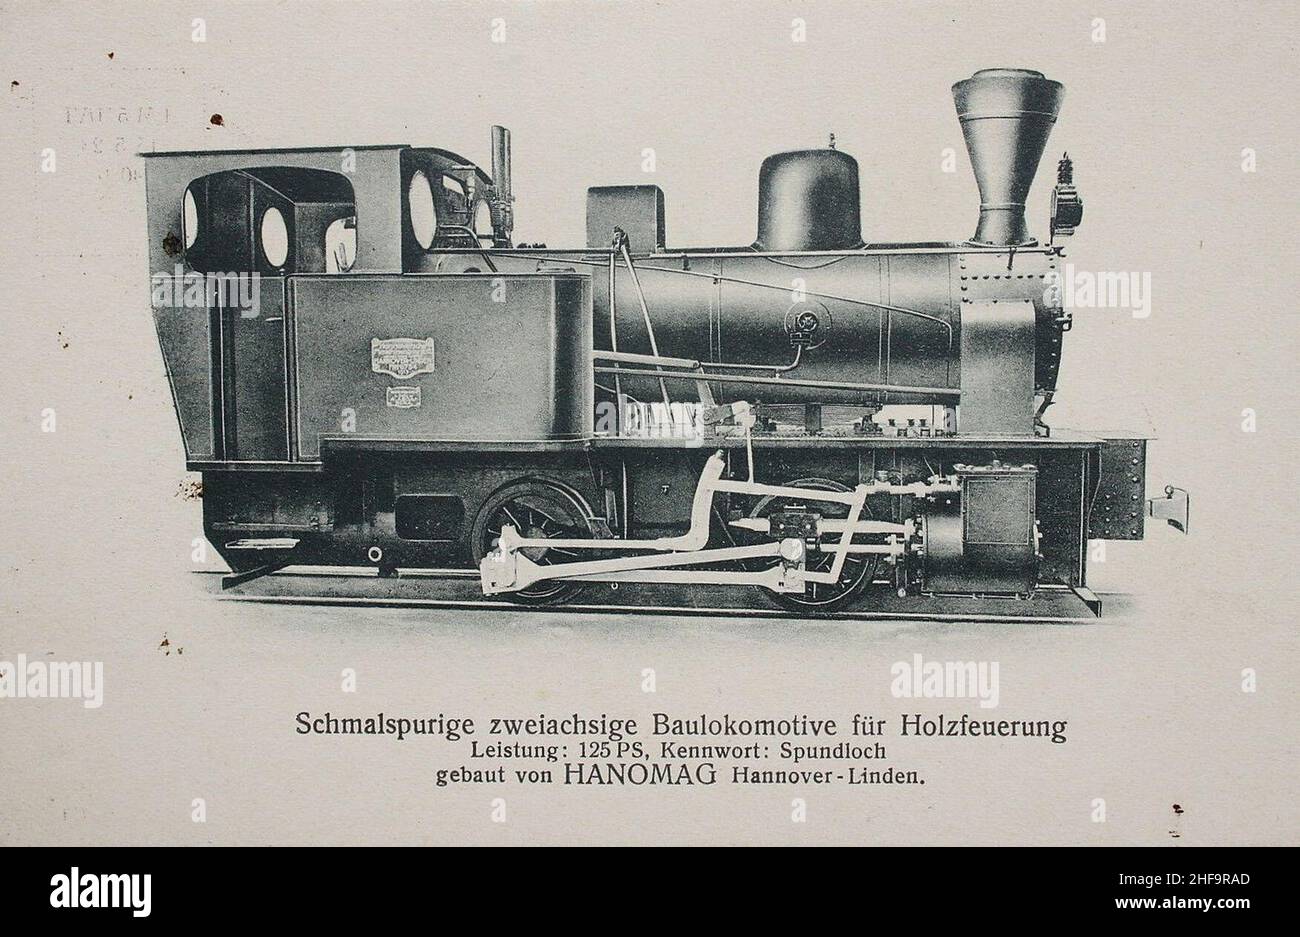 Schmalspurige zweiachsige Baulokomotive für Holzfeuerung, Leistung 125 PS, Kennwort Spundloch, gebaut von HANOMAG Hannover-Linden. Stock Photo